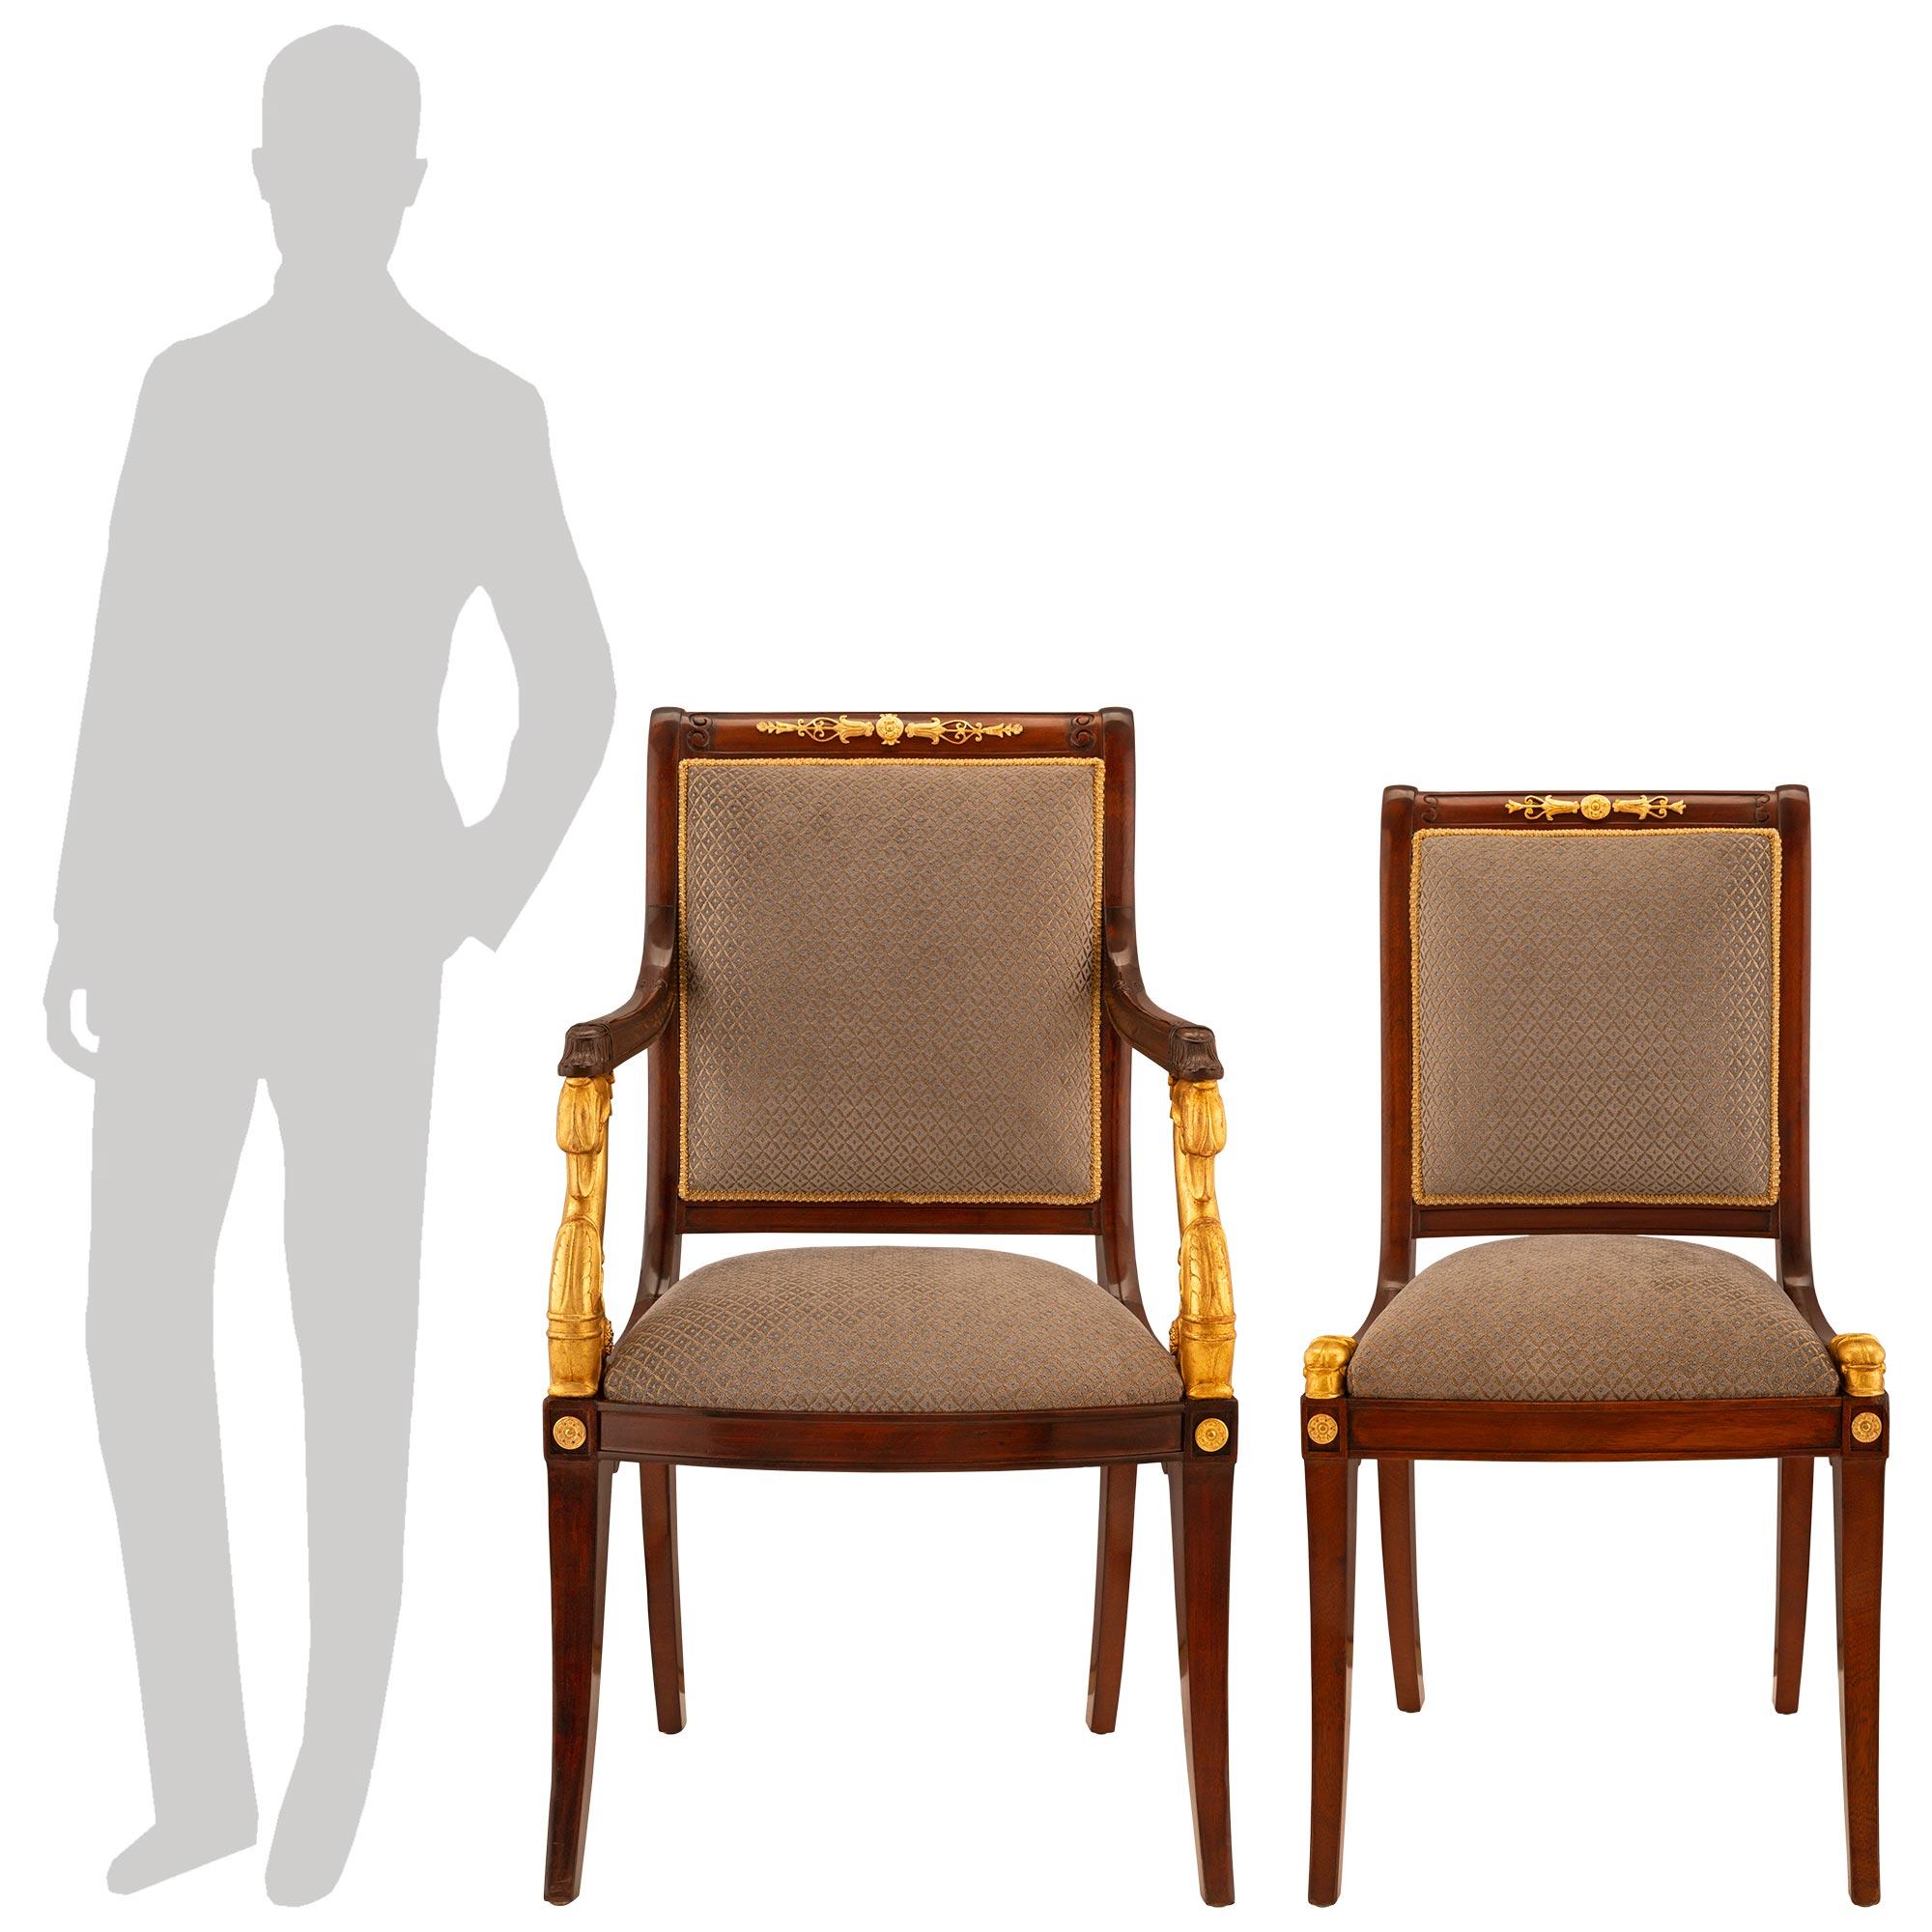 Un très bel ensemble complet de douze chaises de salle à manger néoclassiques françaises du XIXe siècle, en acajou, bois doré et bronze doré. Acajou, bois doré et bronze doré. L'ensemble de chaises de salle à manger se compose de dix chaises